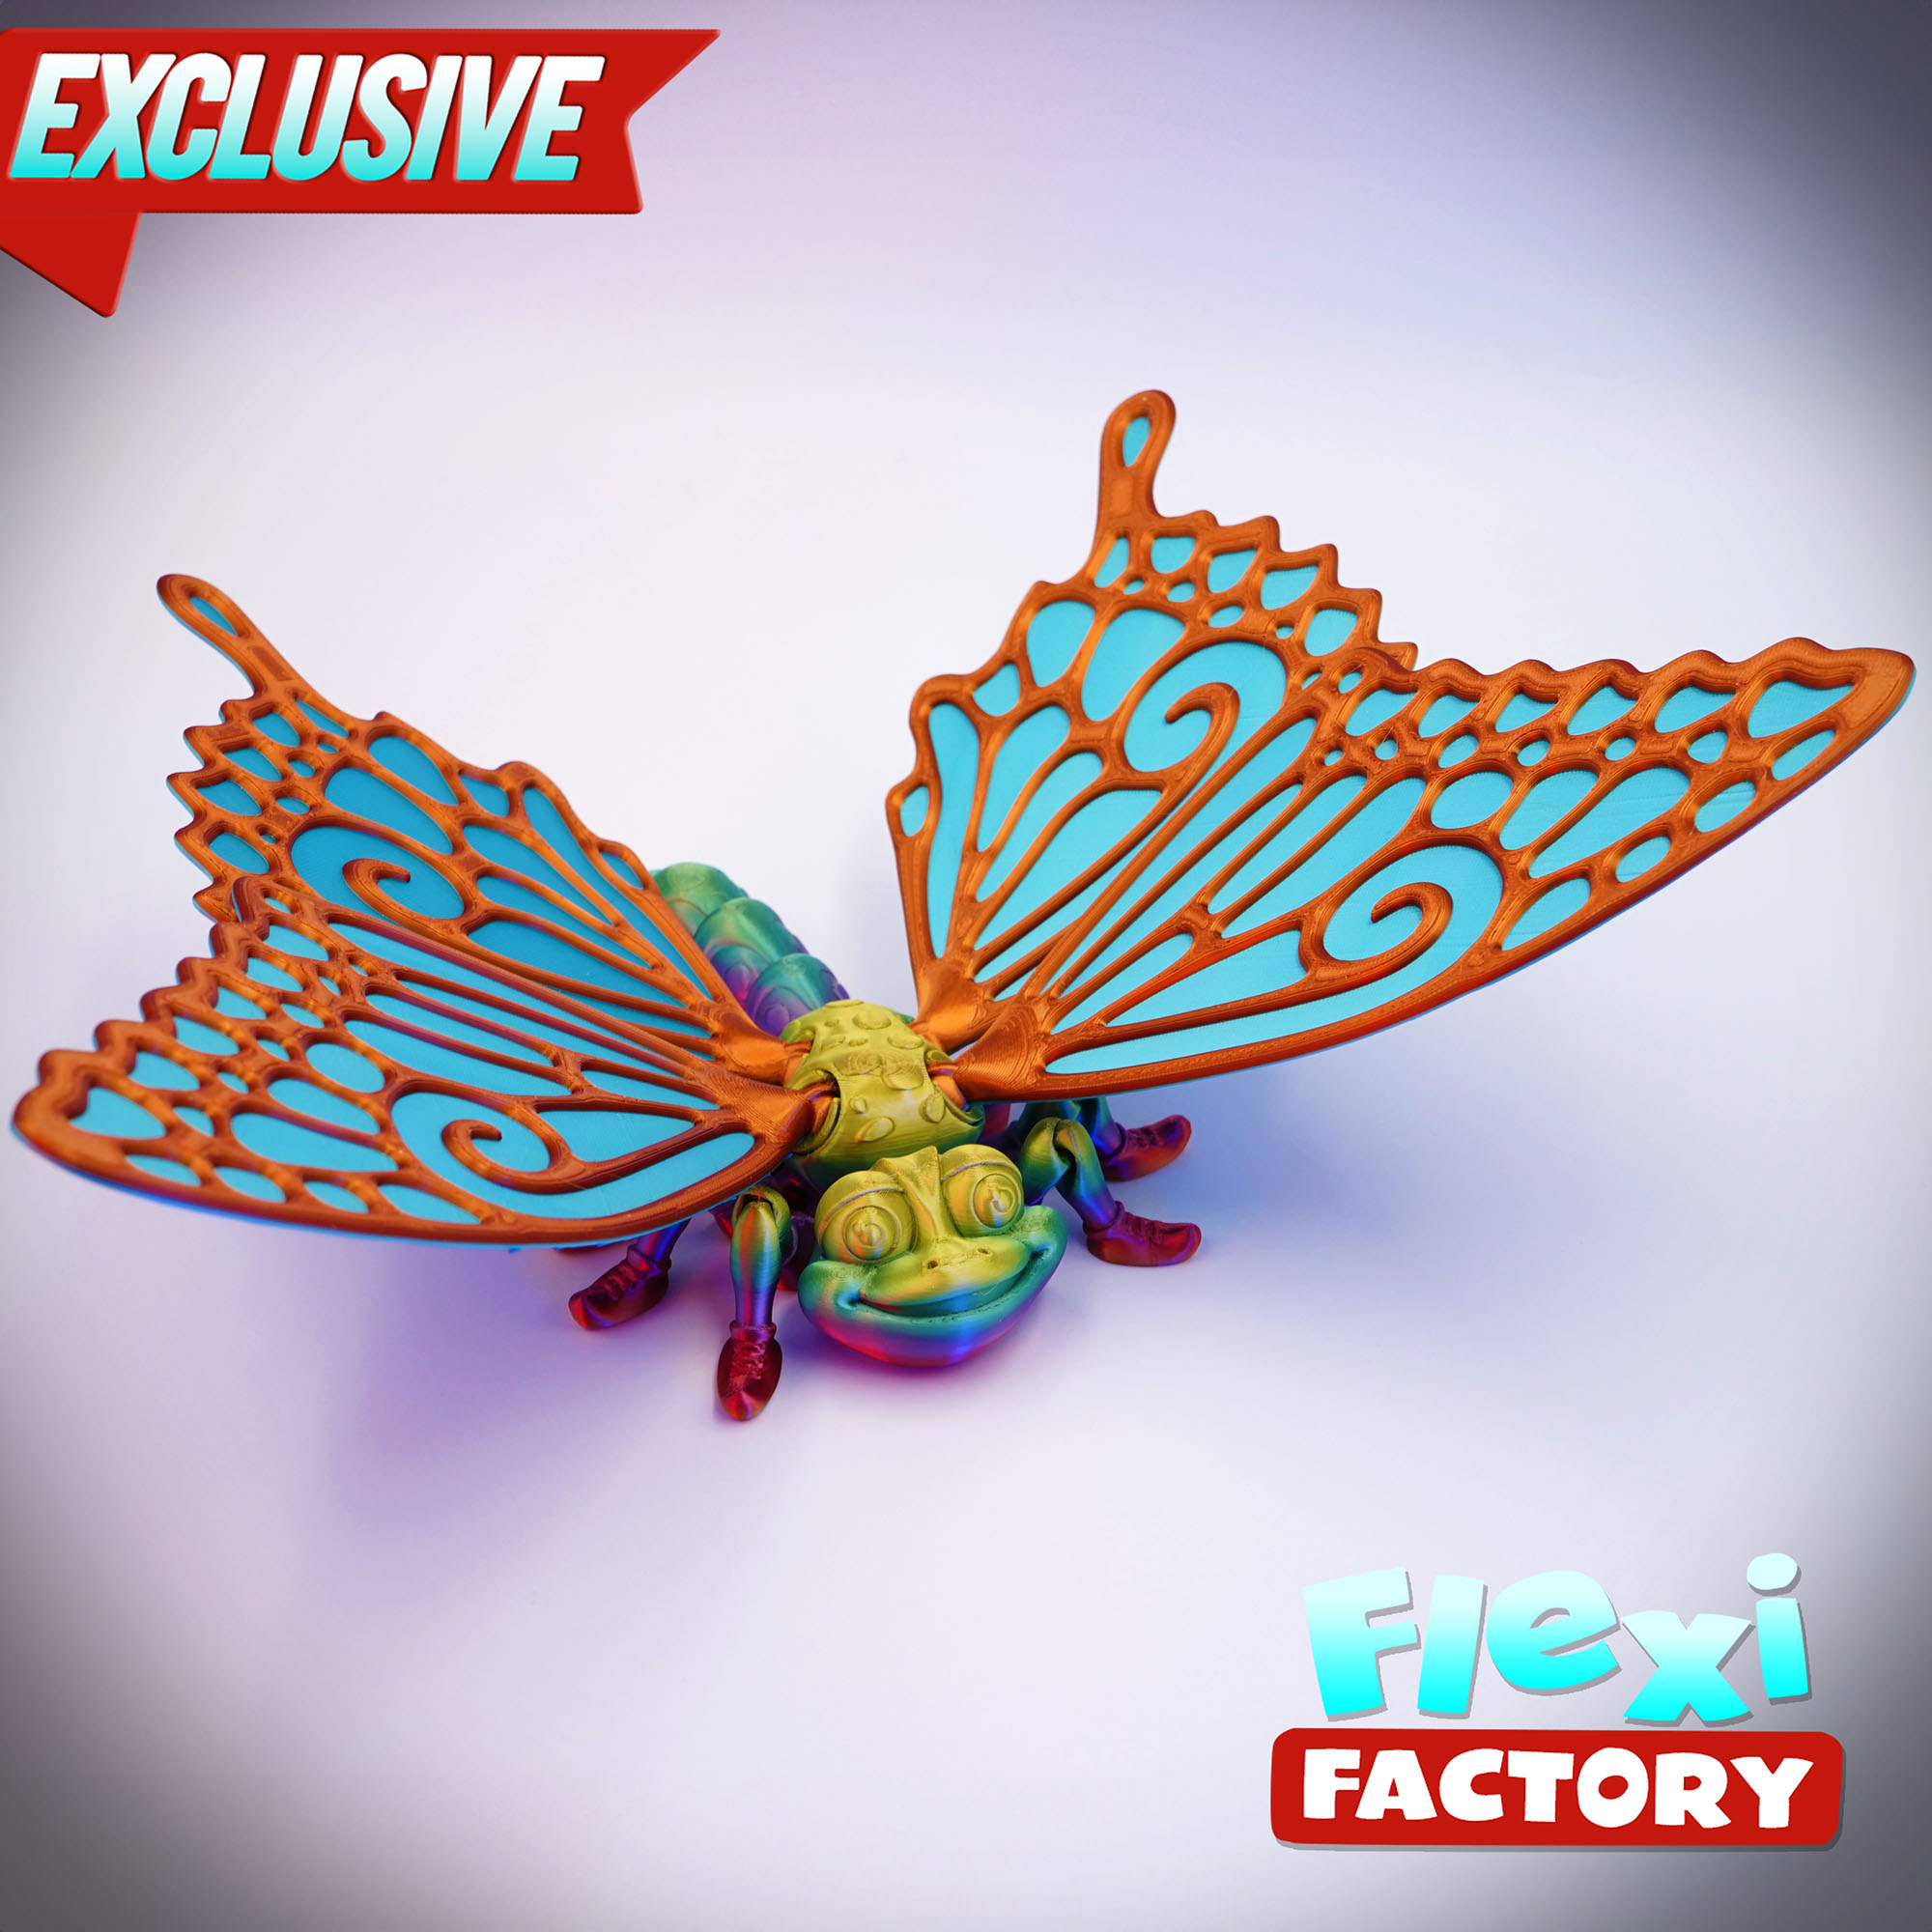 Motýl s barevnými křídly